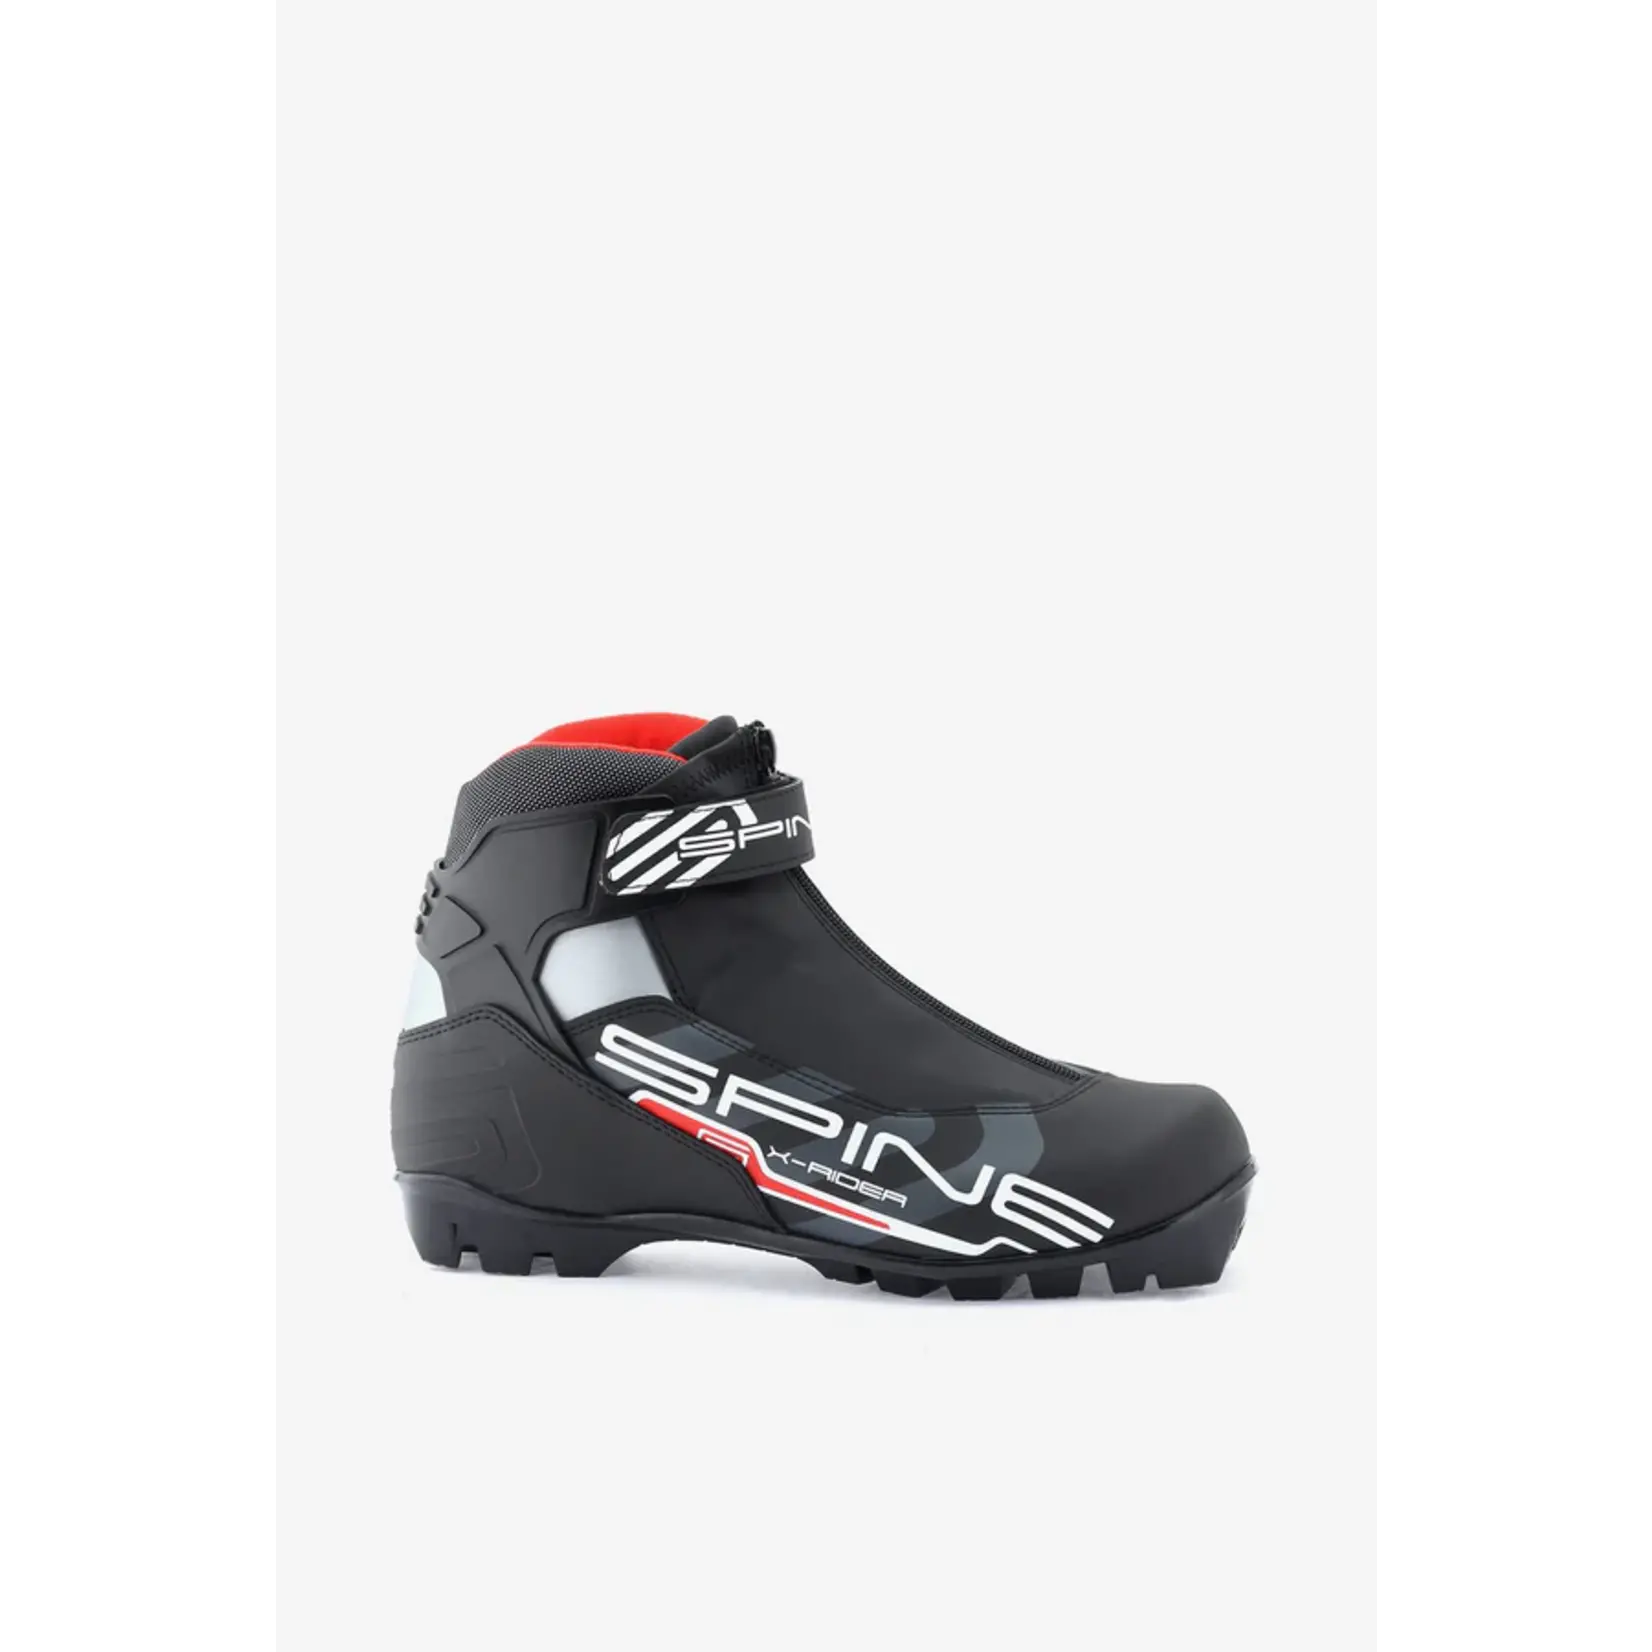 Spine SPINE X-Rider 254 (NNN) Nordic Ski Boots